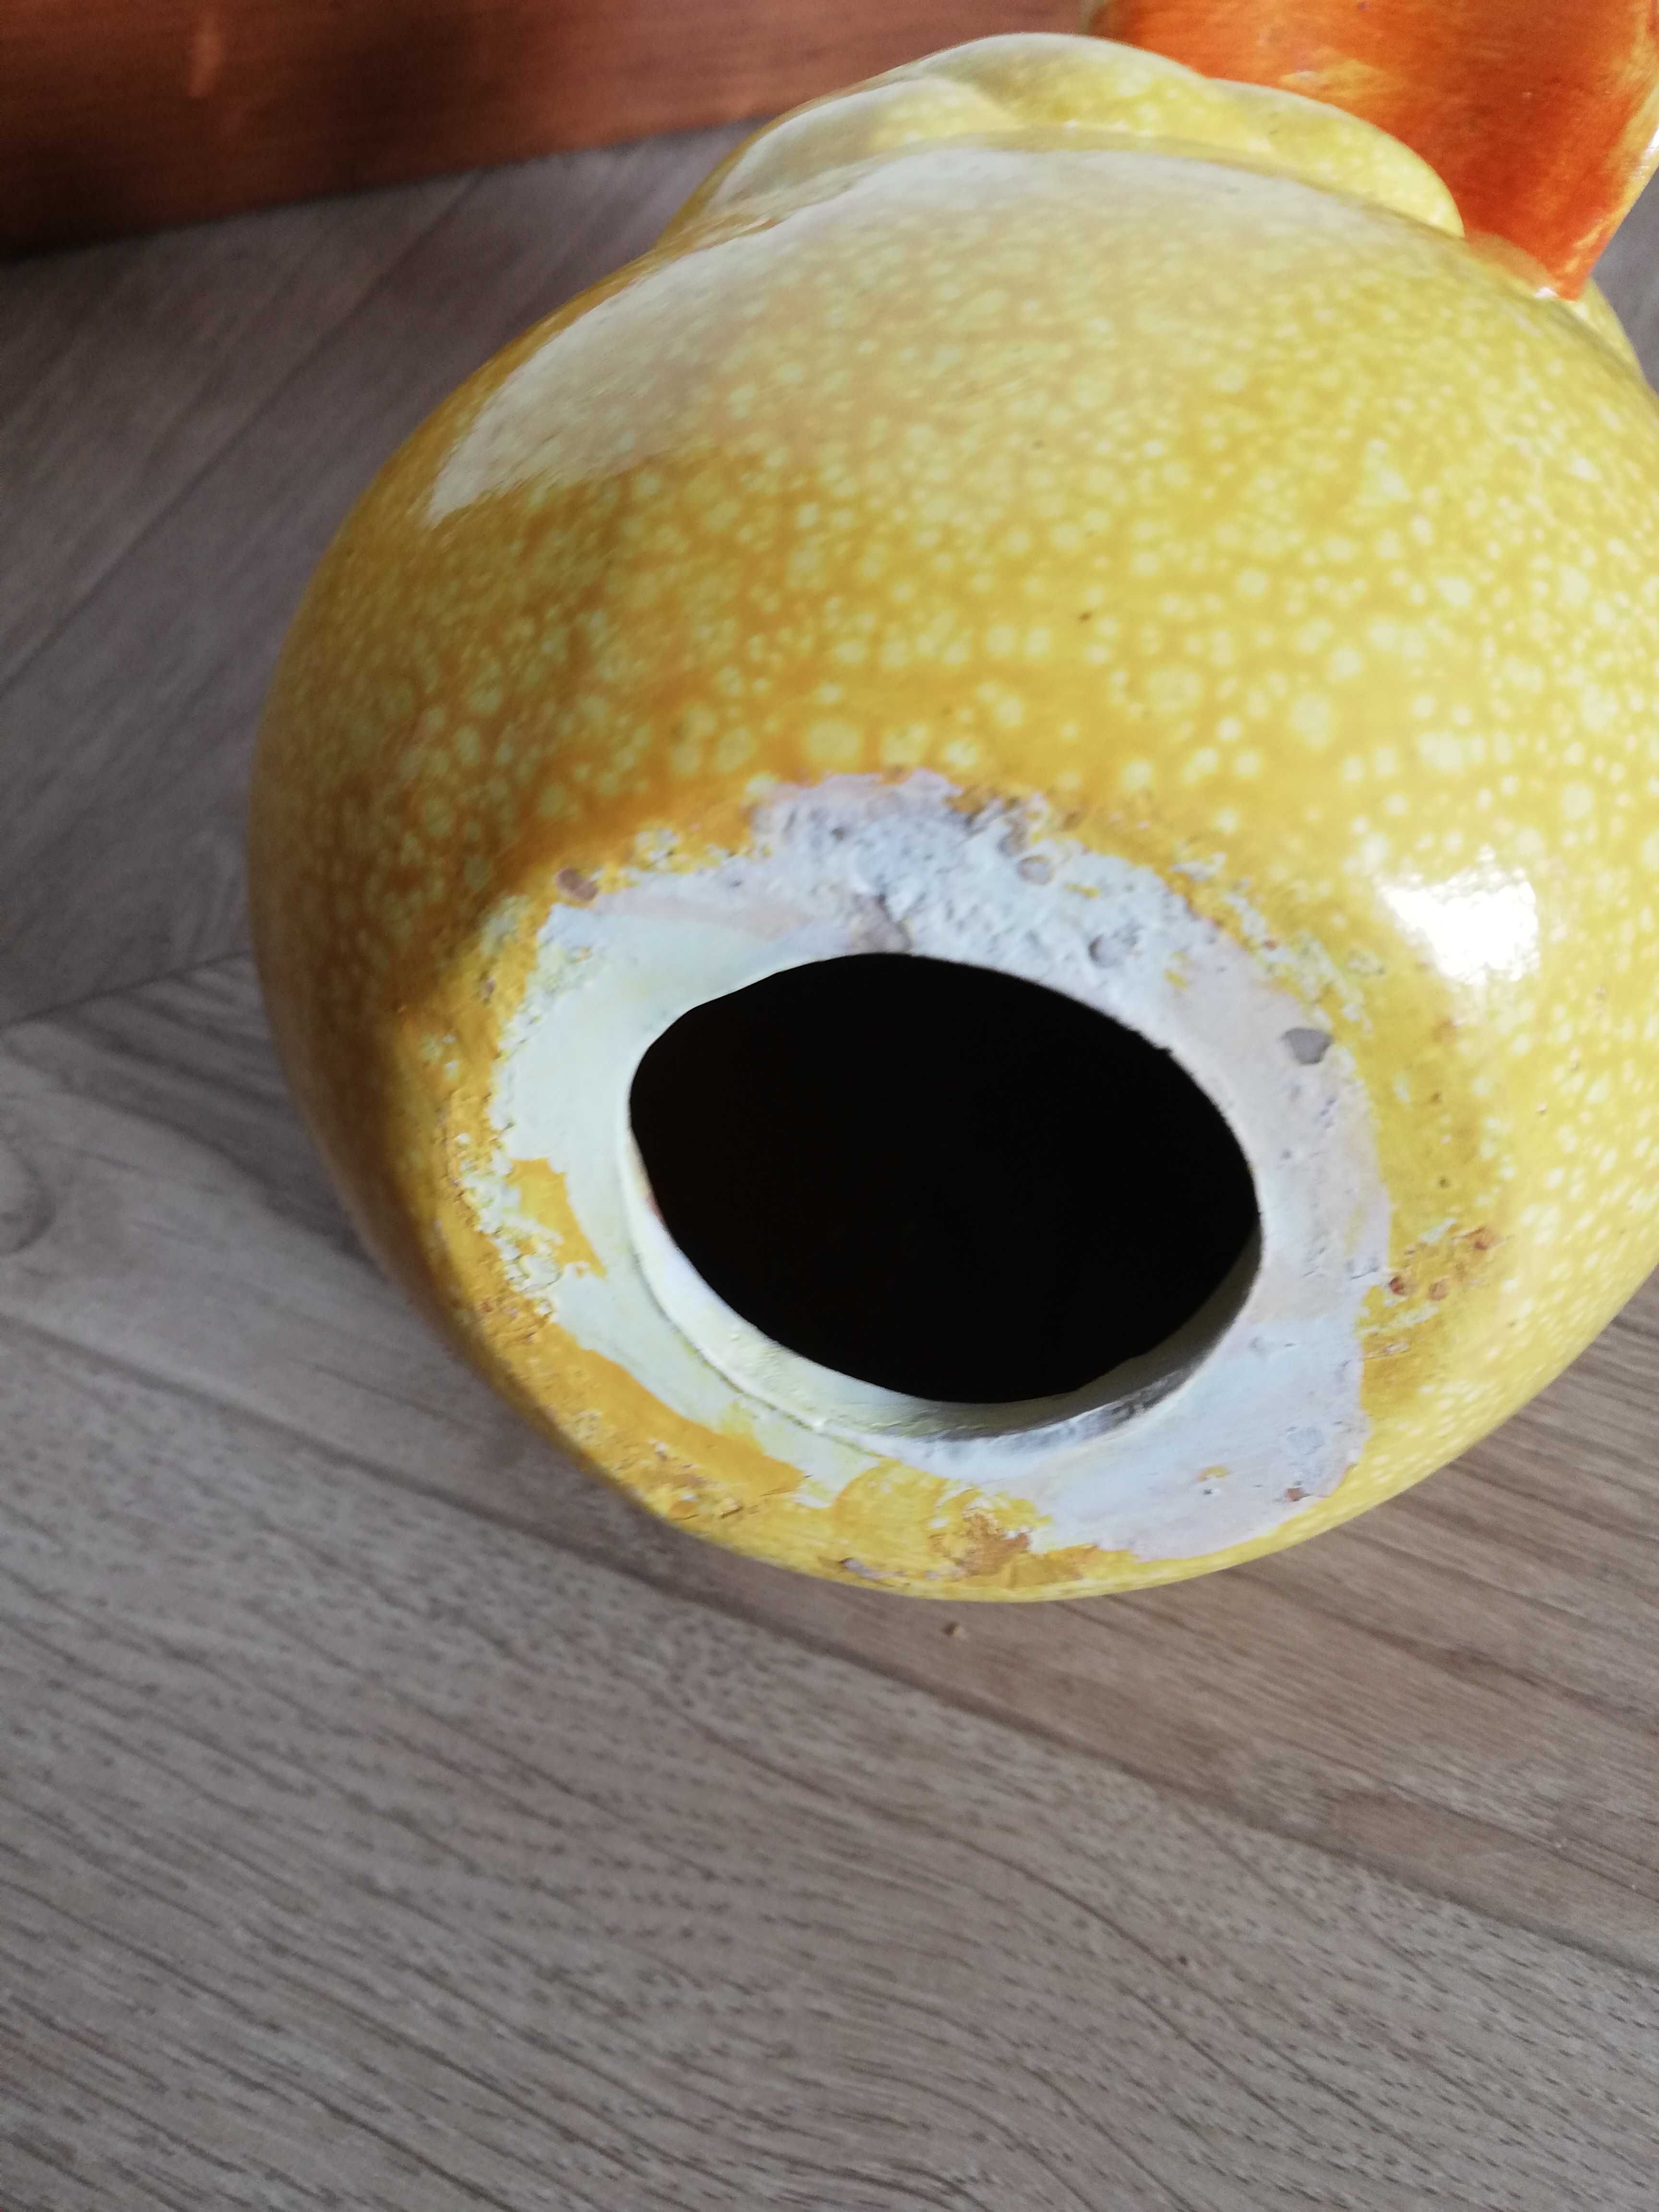 Figurka ceramiczna kaczka żółta 17cm wysokości ozdoba